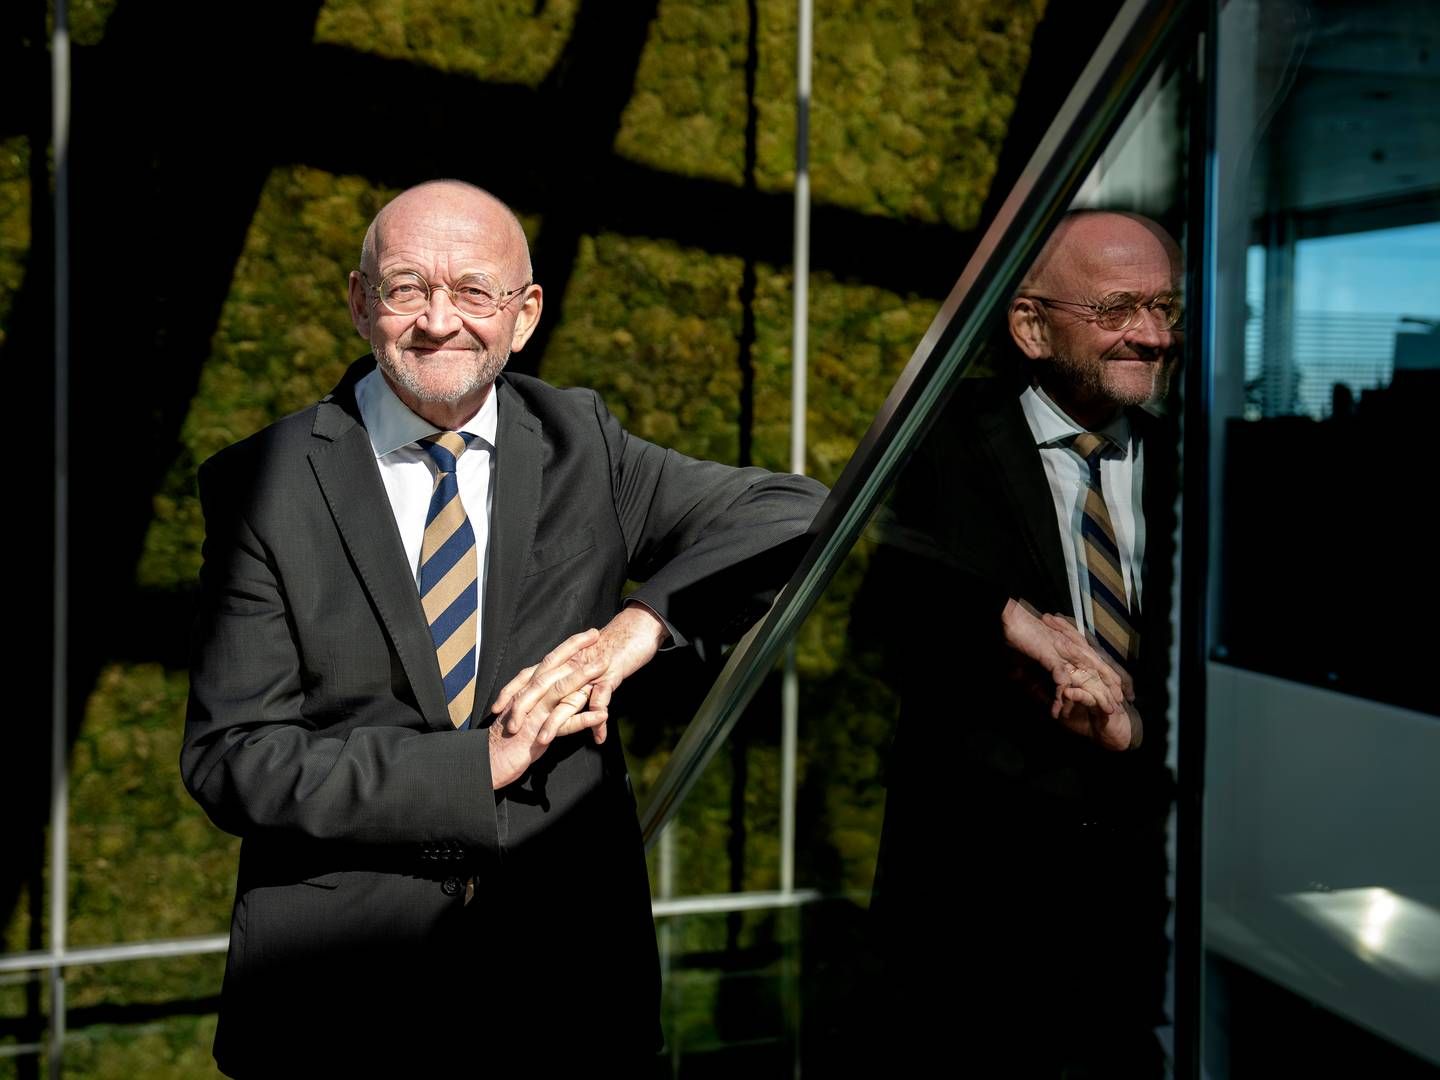 Torben Möger Pedersen will be resigning as CEO of PensionDanmark on October 1. | Foto: Stine Bidstrup